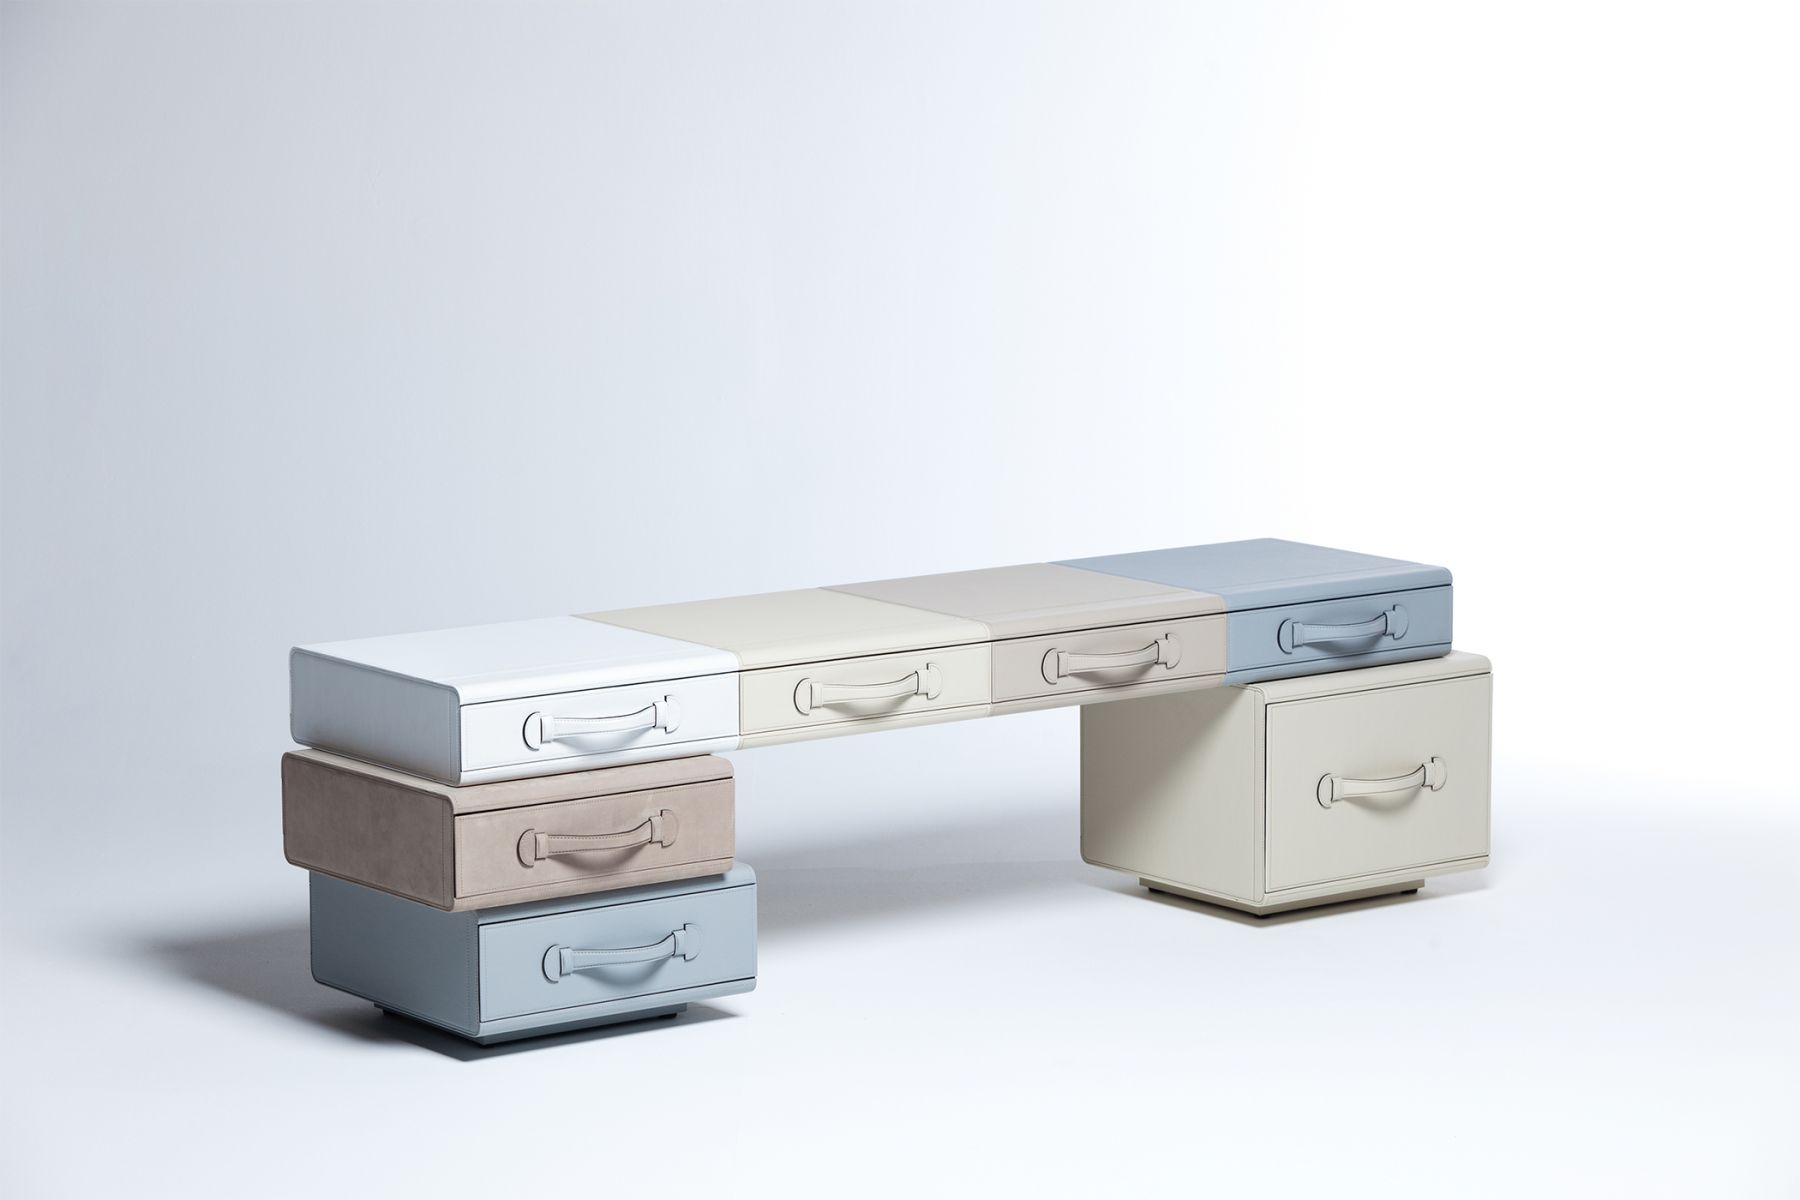 Panca 'Bench of briefcases' Maarten De Ceulaer pic-1